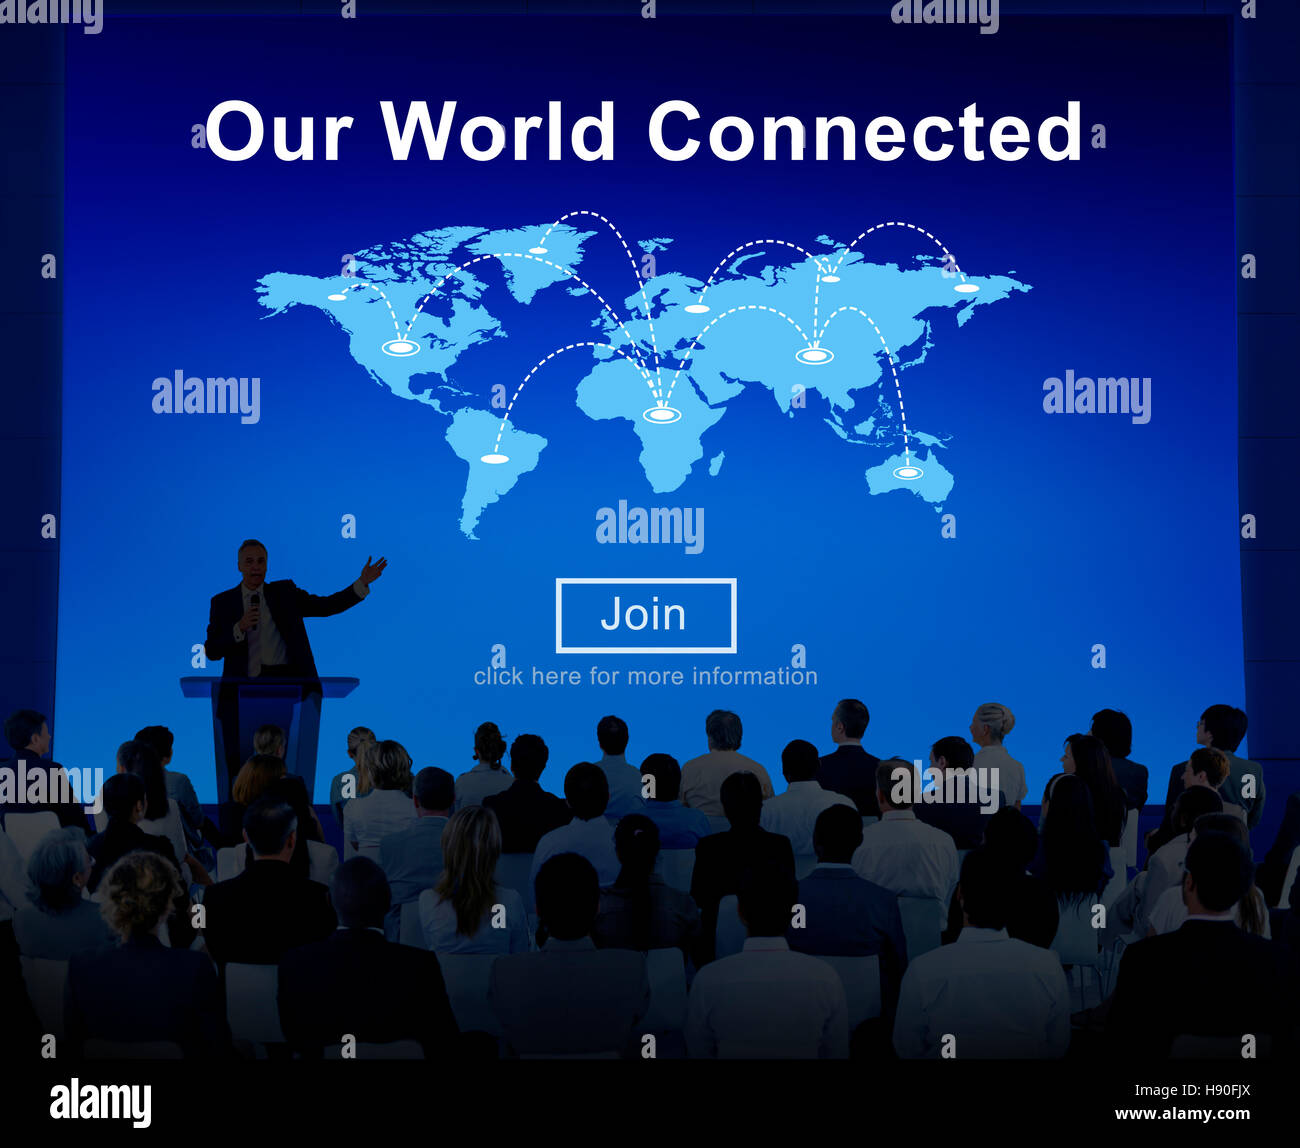 Global communication компания. Global communication - the way. Global communication 76 14. Globalize.